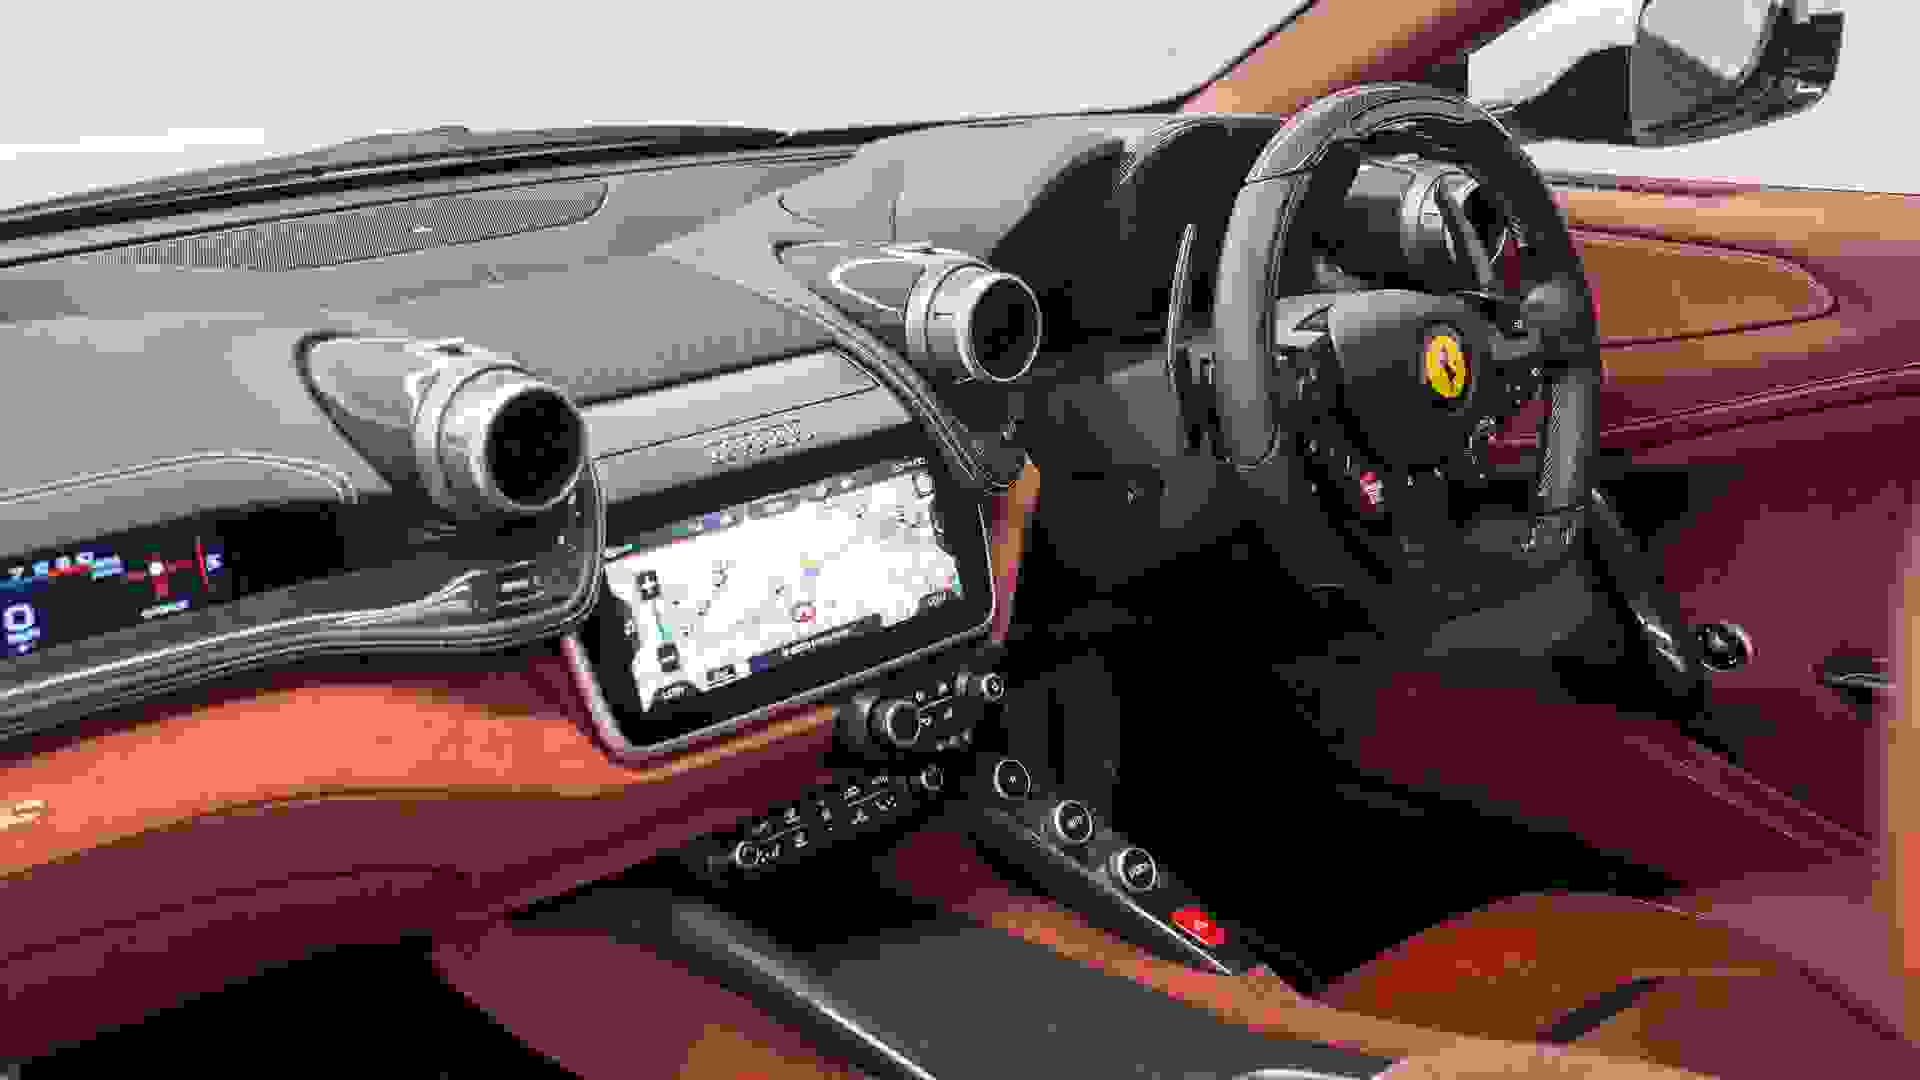 Ferrari GTC4 Lusso Photo 5b08a86c-17dc-4071-bf1c-ef700d8158ff.jpg